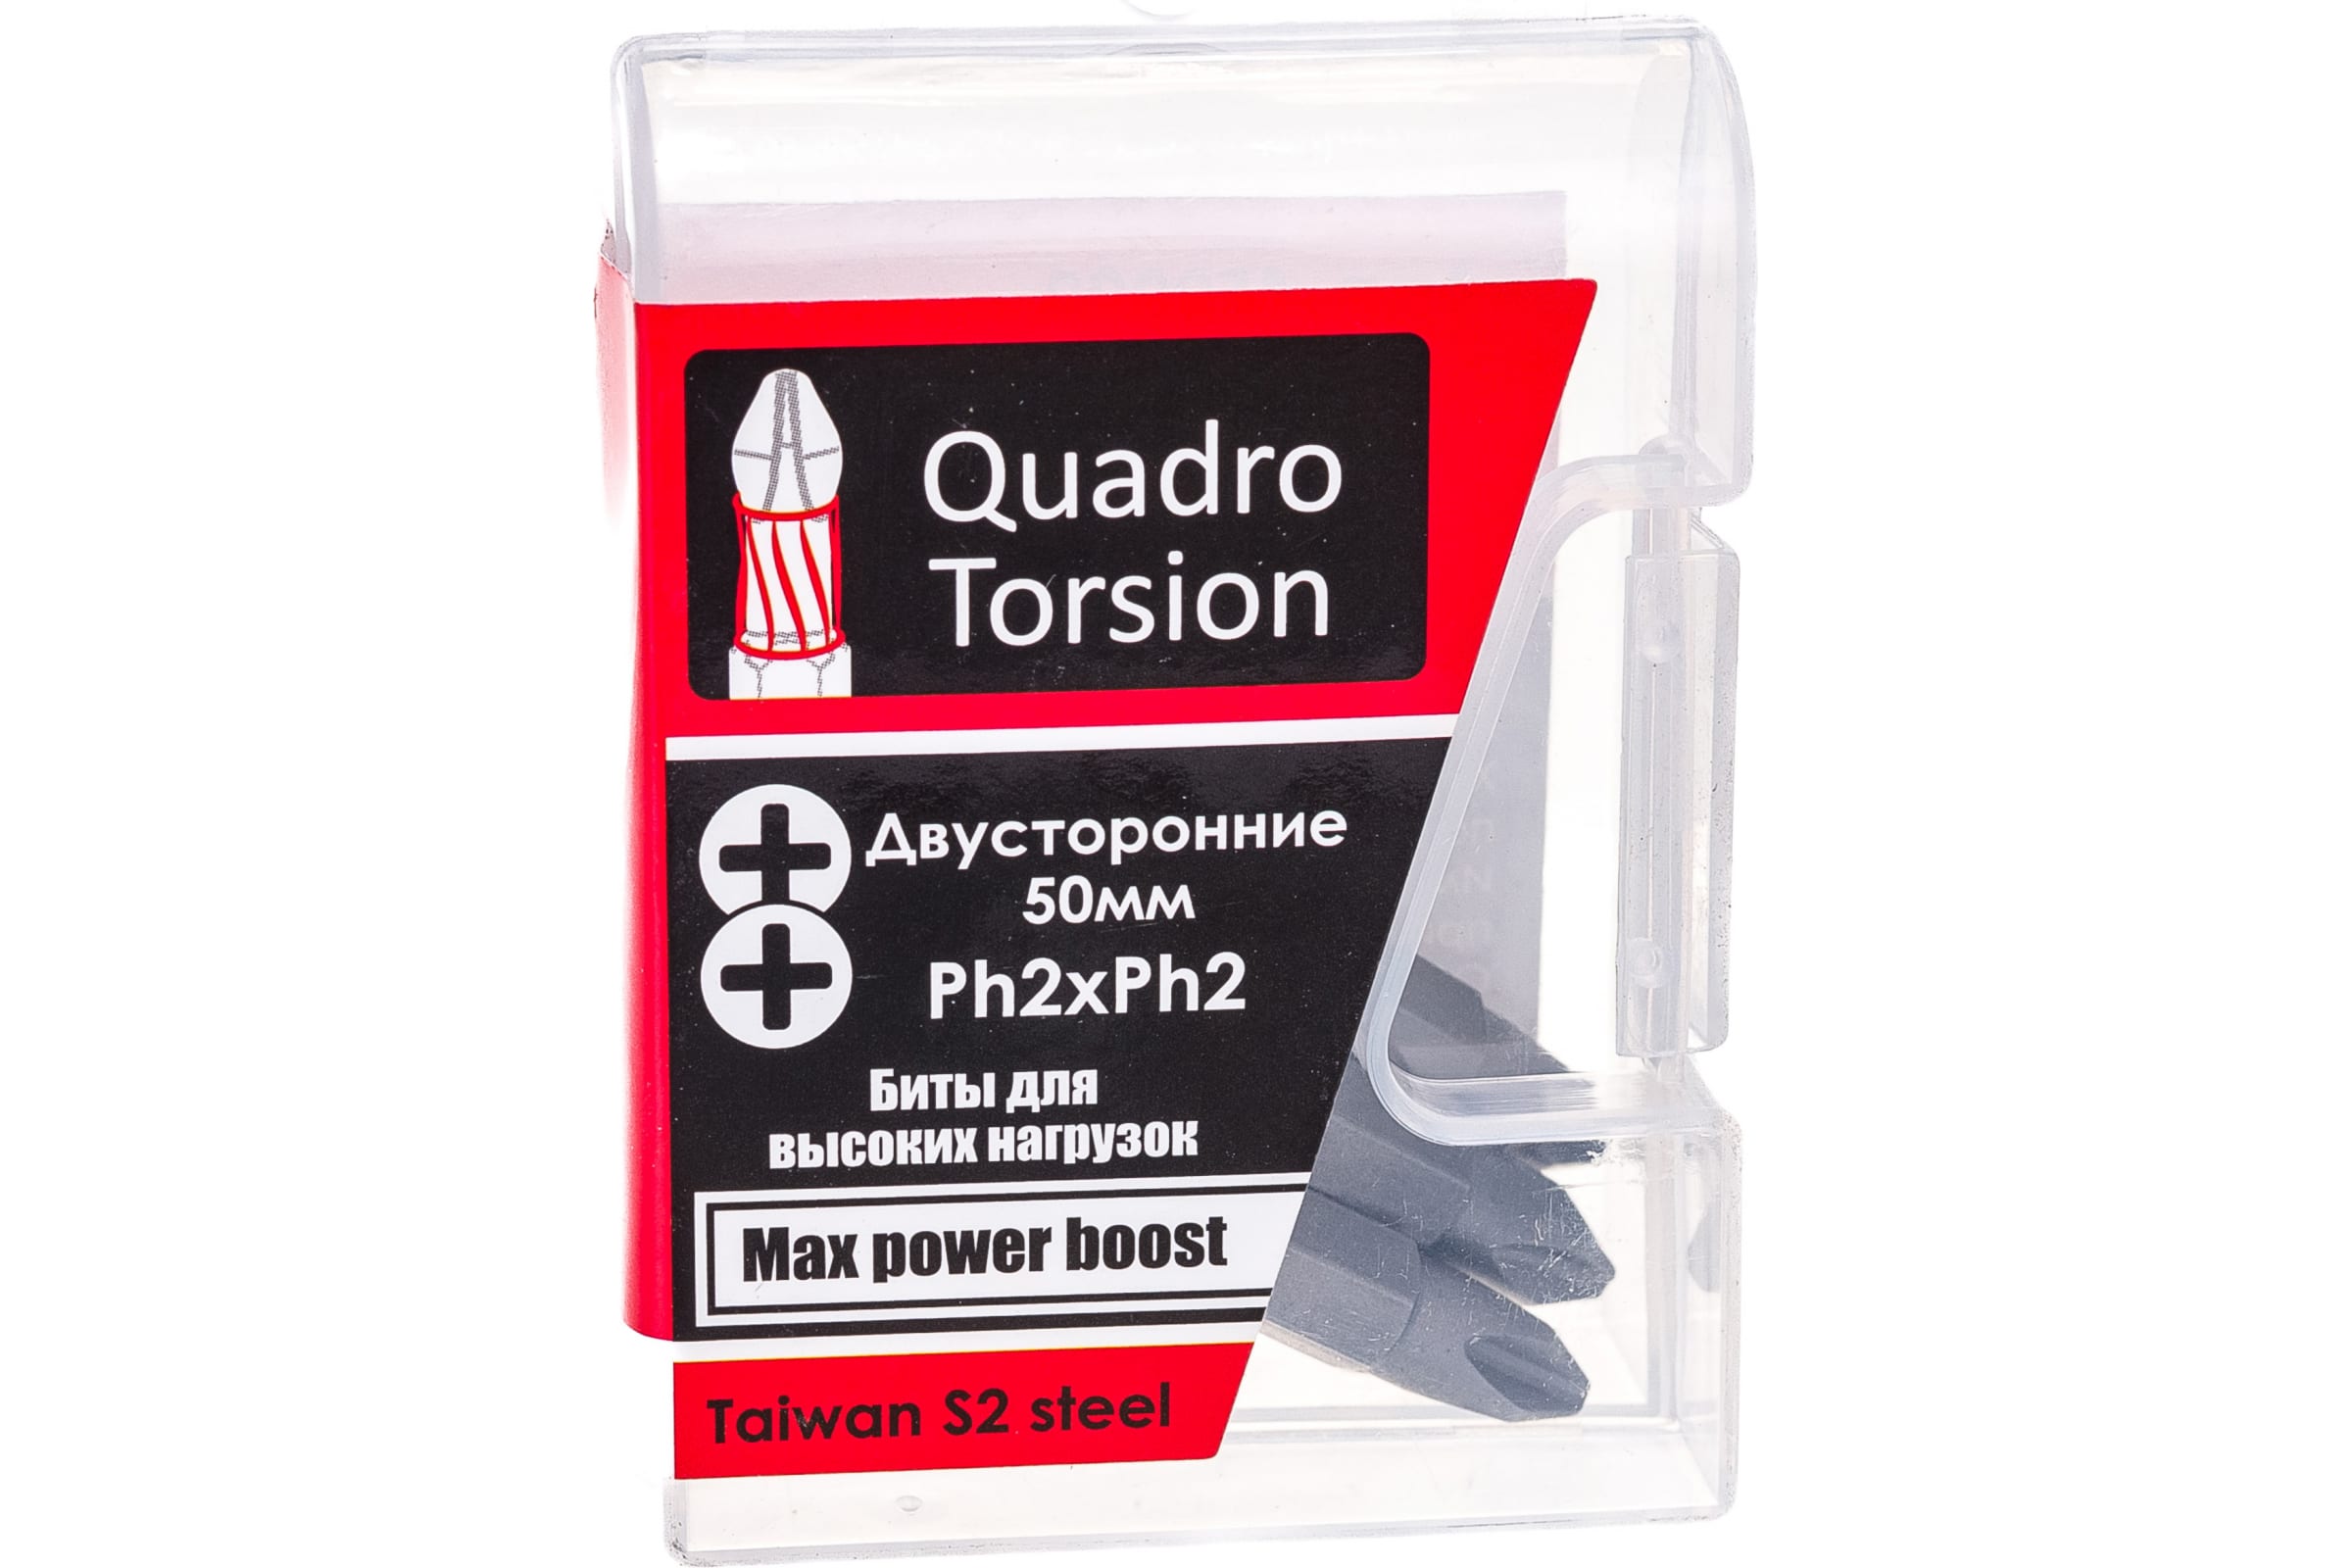 Quadro Torsion бита 1/4 двусторонняя Ph2xPh2 - 50мм 5шт./кор. 450022 доска магнитная двусторонняя 40 × 30 см